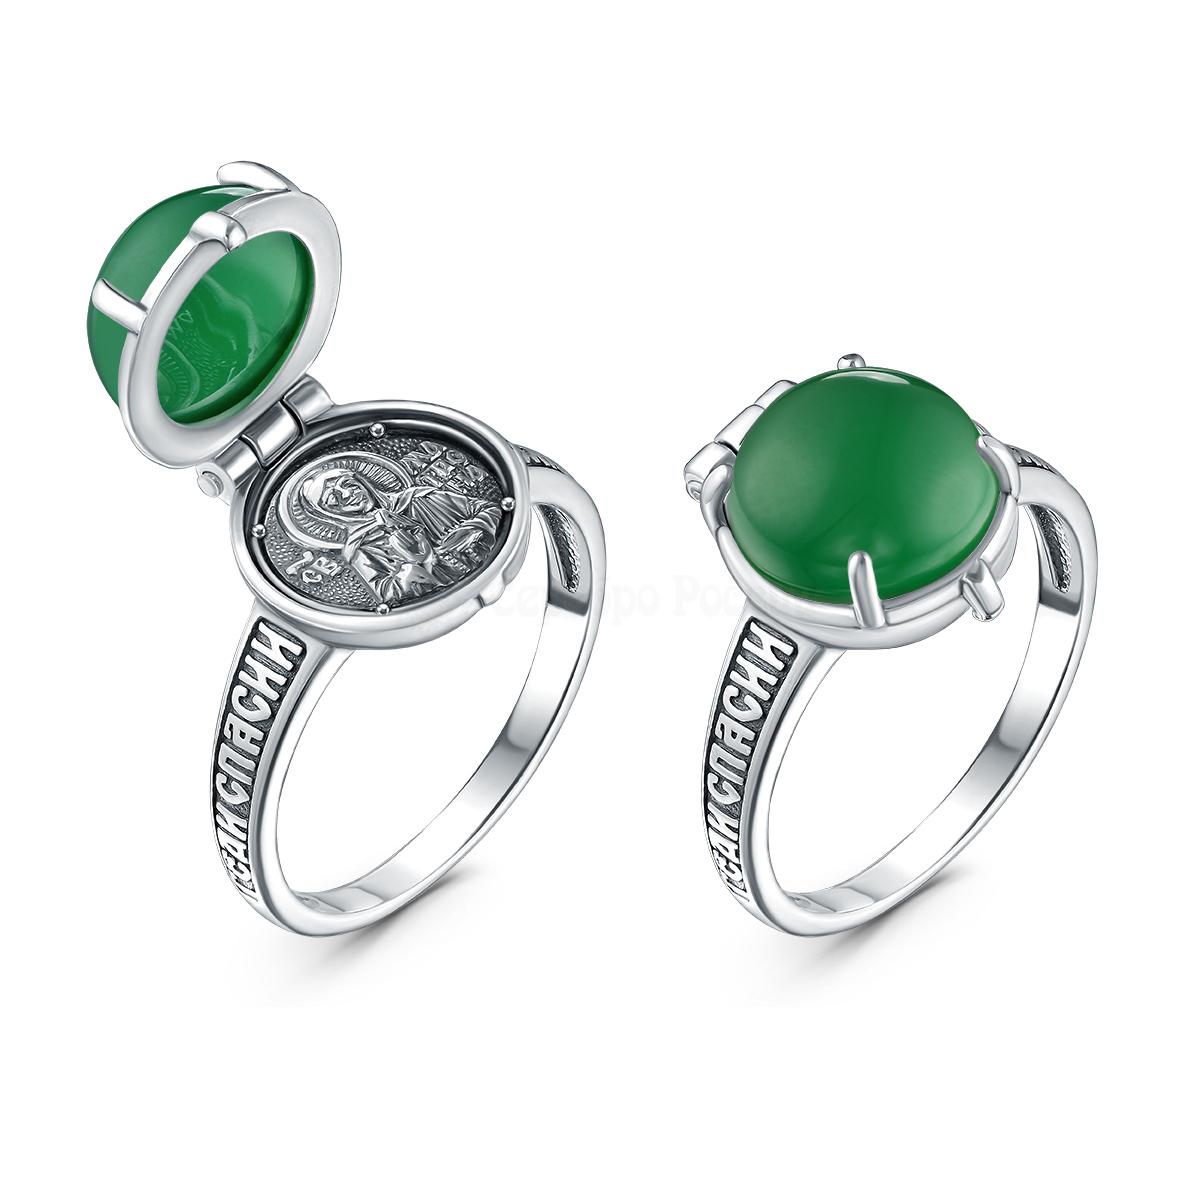 Кольцо из чернёного серебра с натуральным зелёным агатом - Спаси и сохрани, святая Матрона (внутри) К-138-041ч409